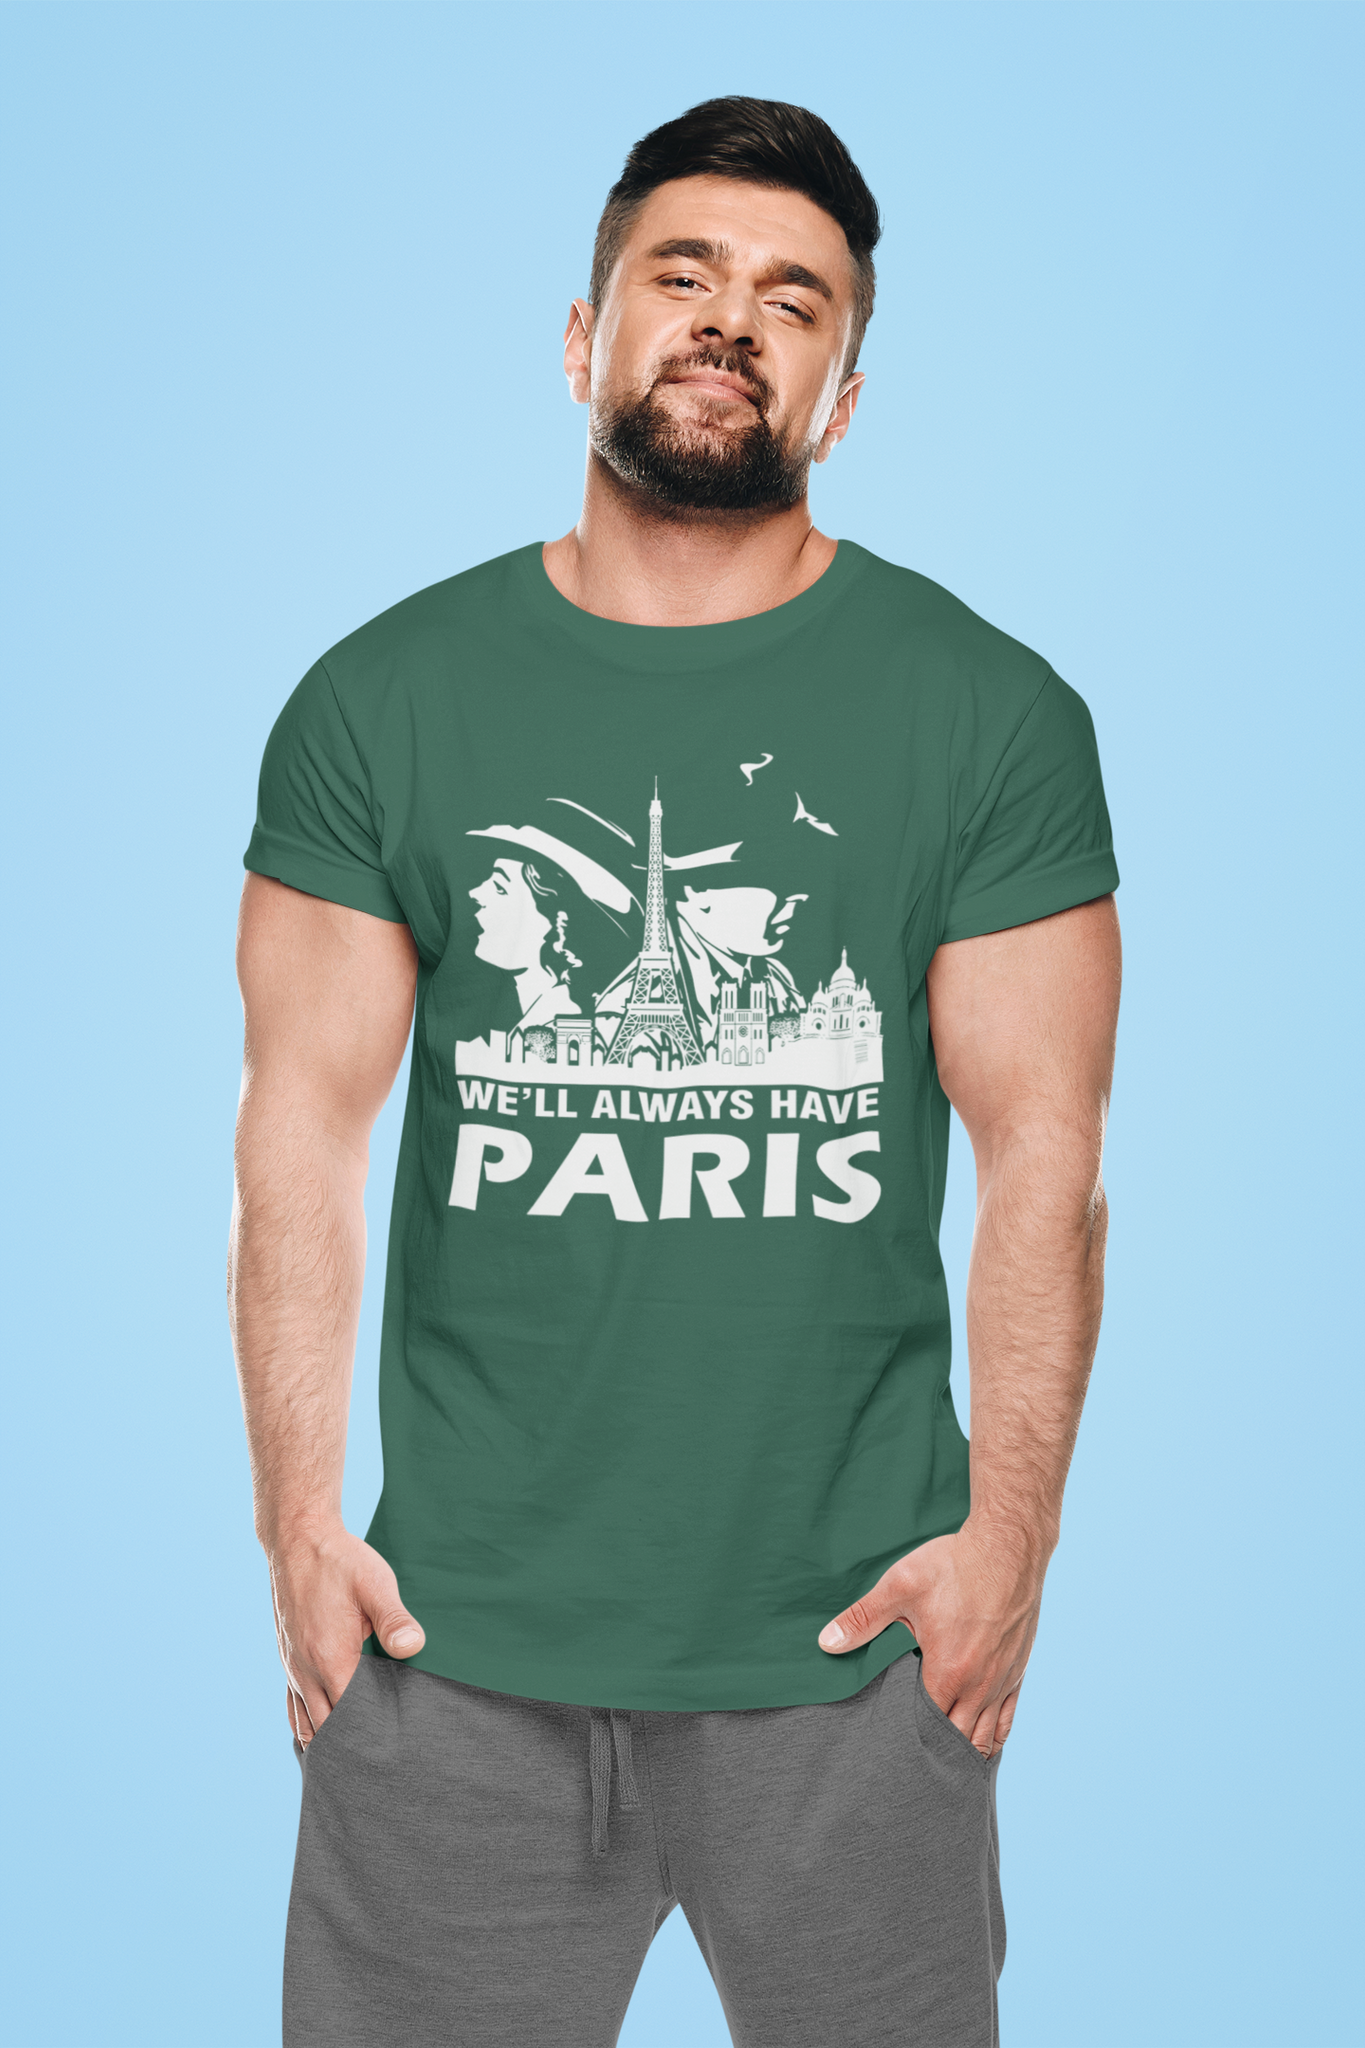 Casablanca T Shirt, Well Always Have Paris Tshirt, Rick Blaine Ilsa Lund T Shirt